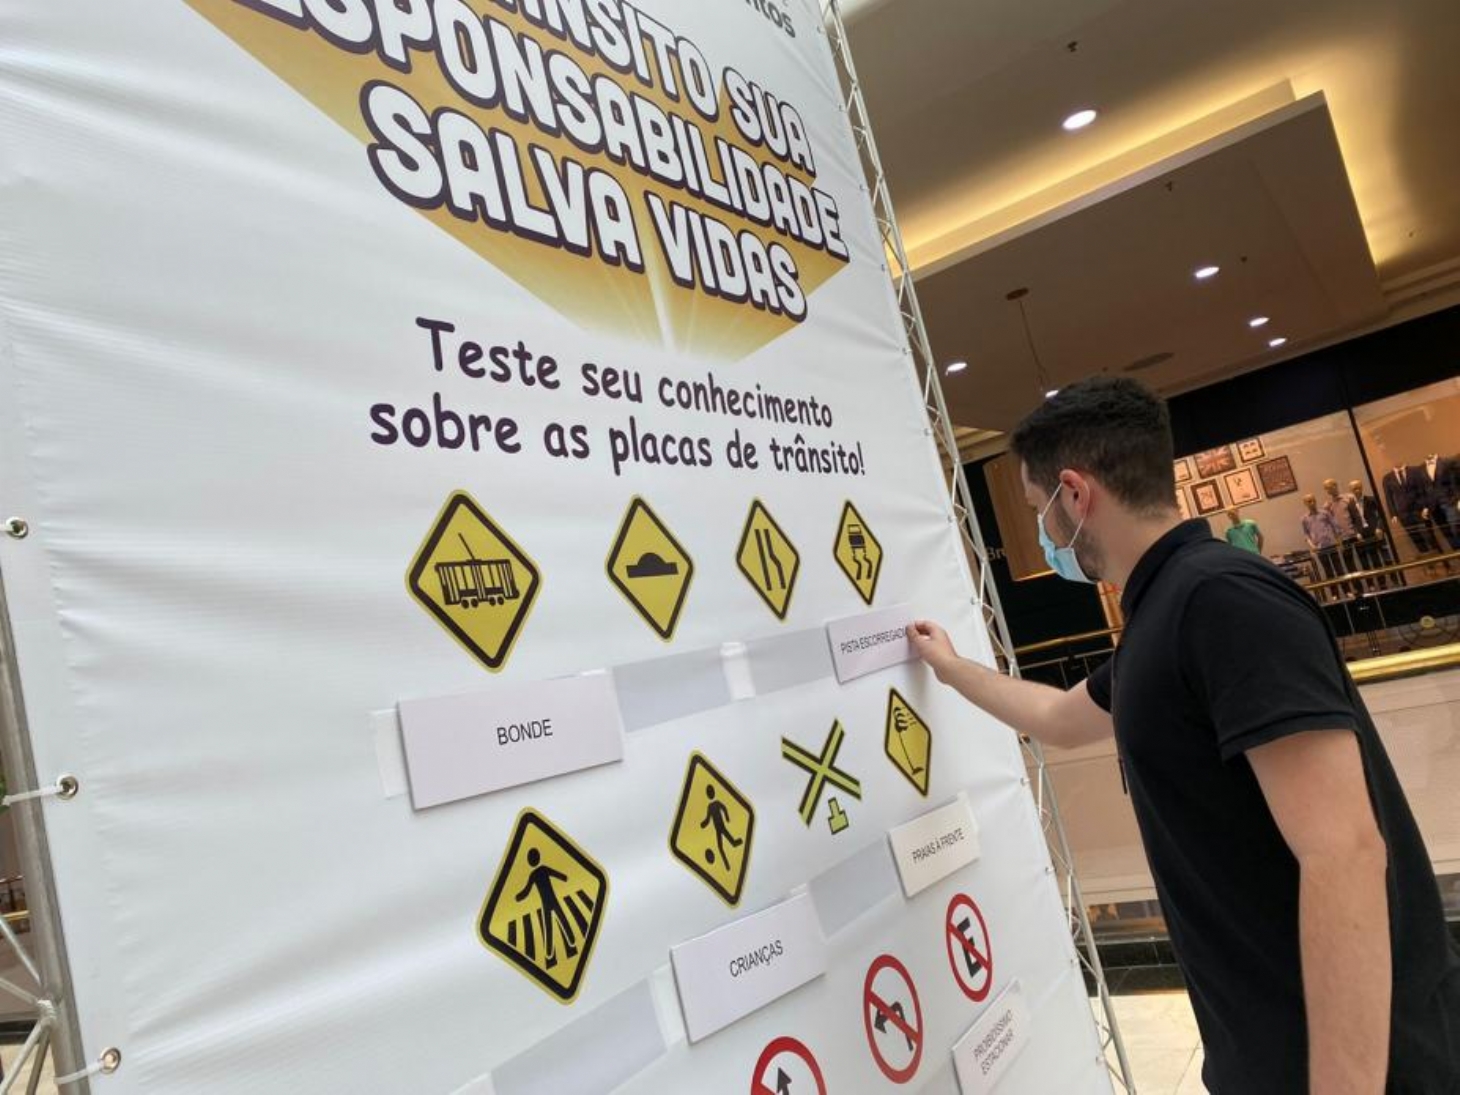 Exposição interativa sobre segurança no trânsito prossegue até domingo em Santos | Jornal da Orla